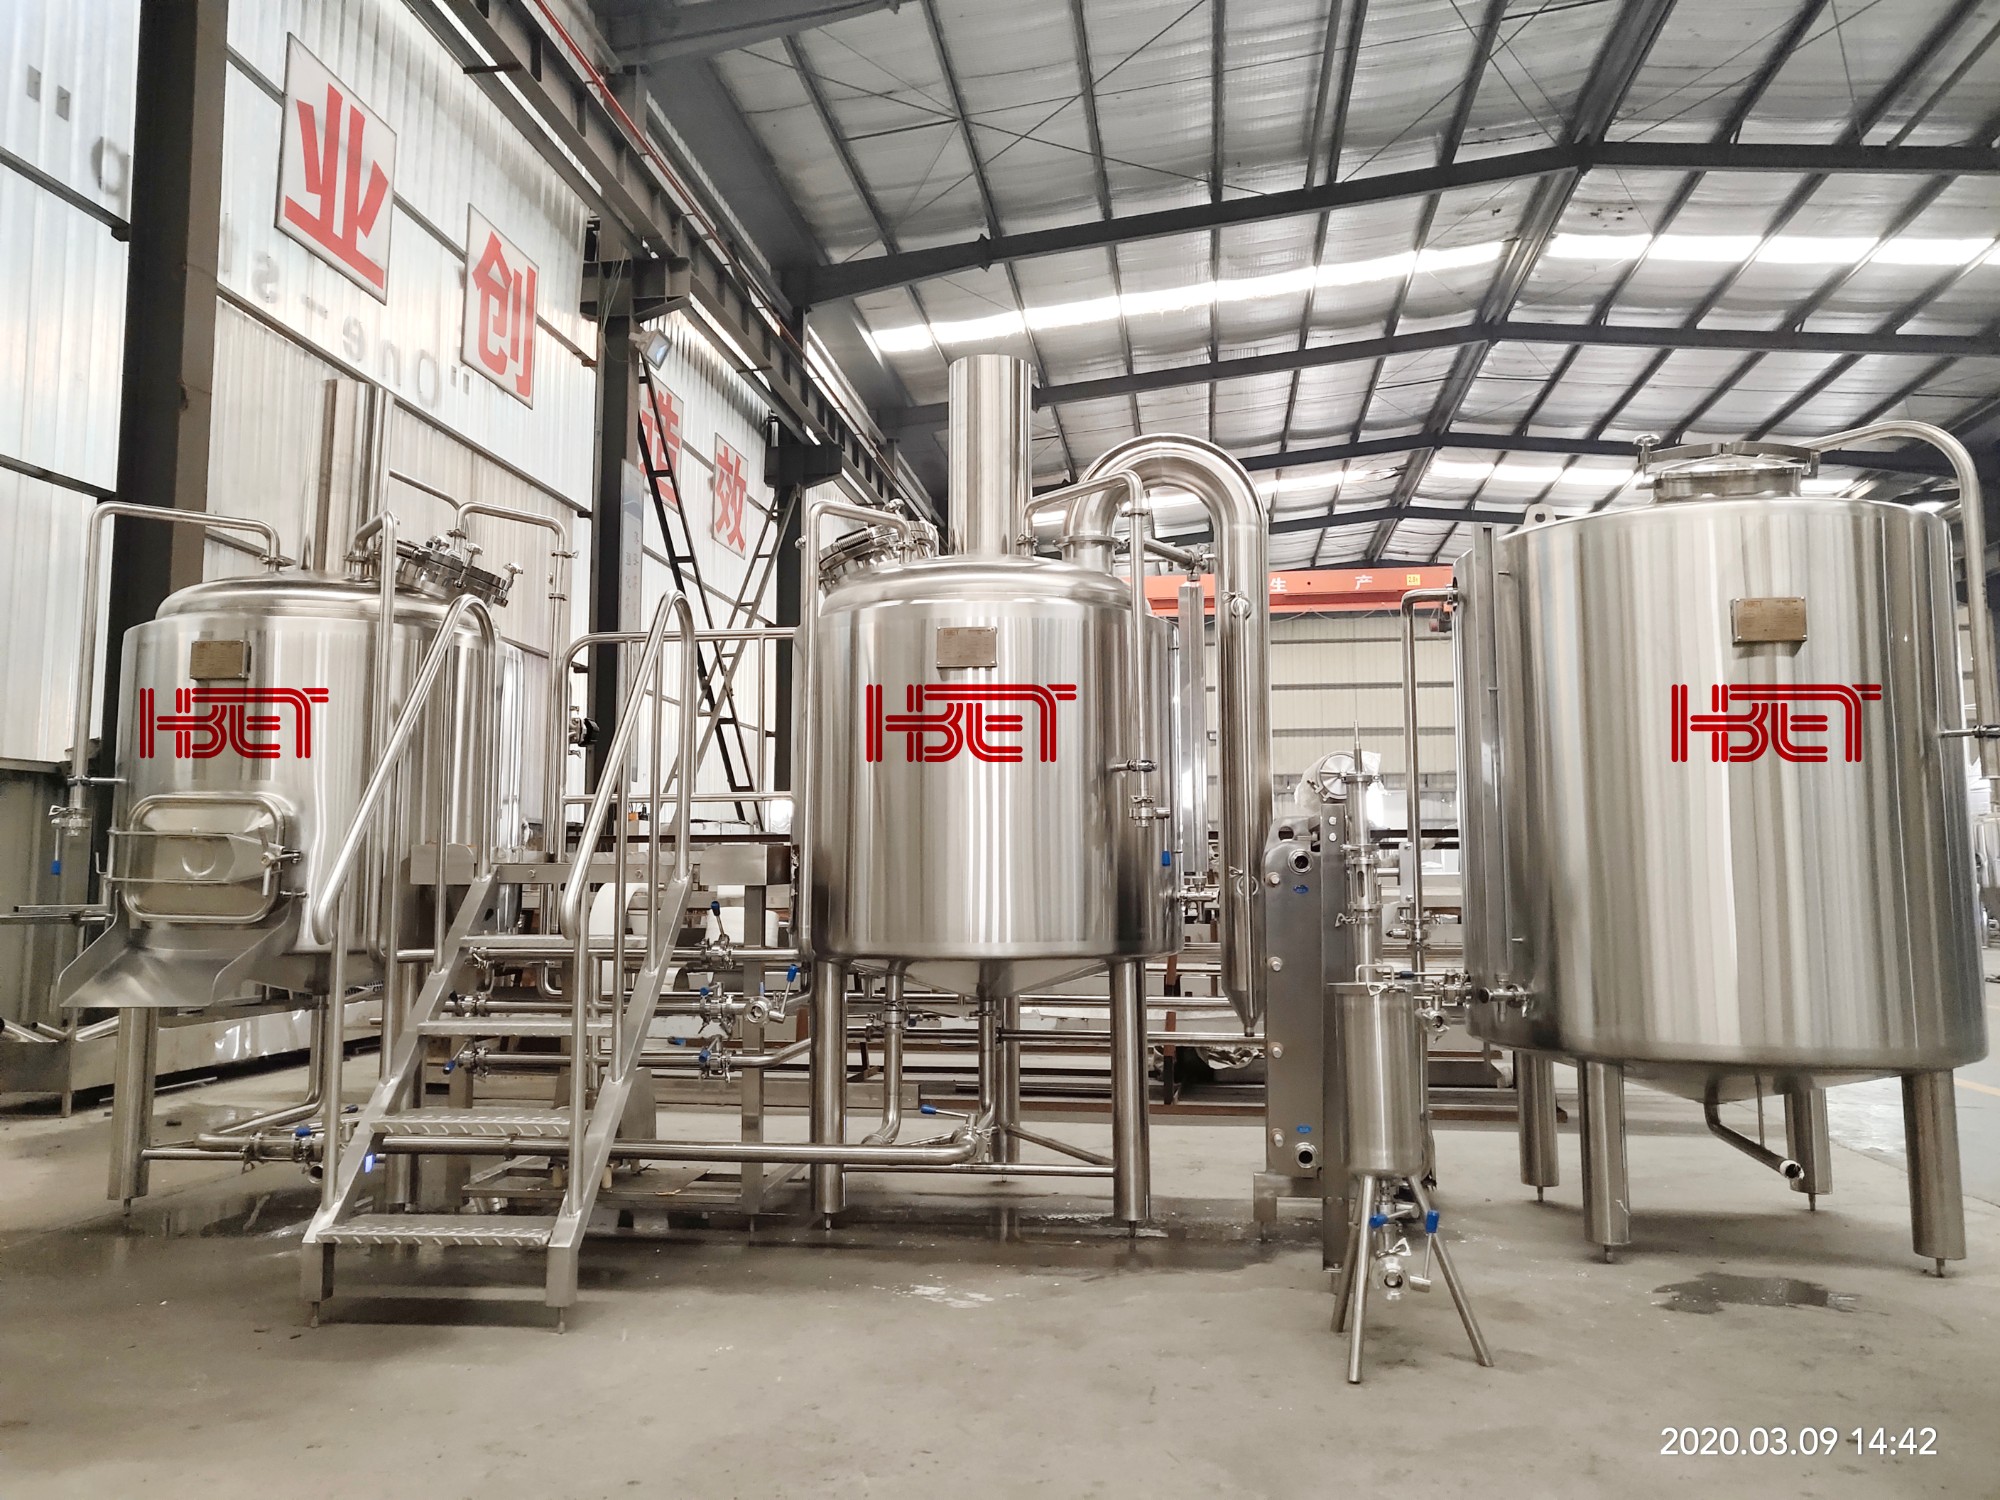 Echipamente 500L fabrică de bere complet este de așteptat să sosească în portul Constanța mai